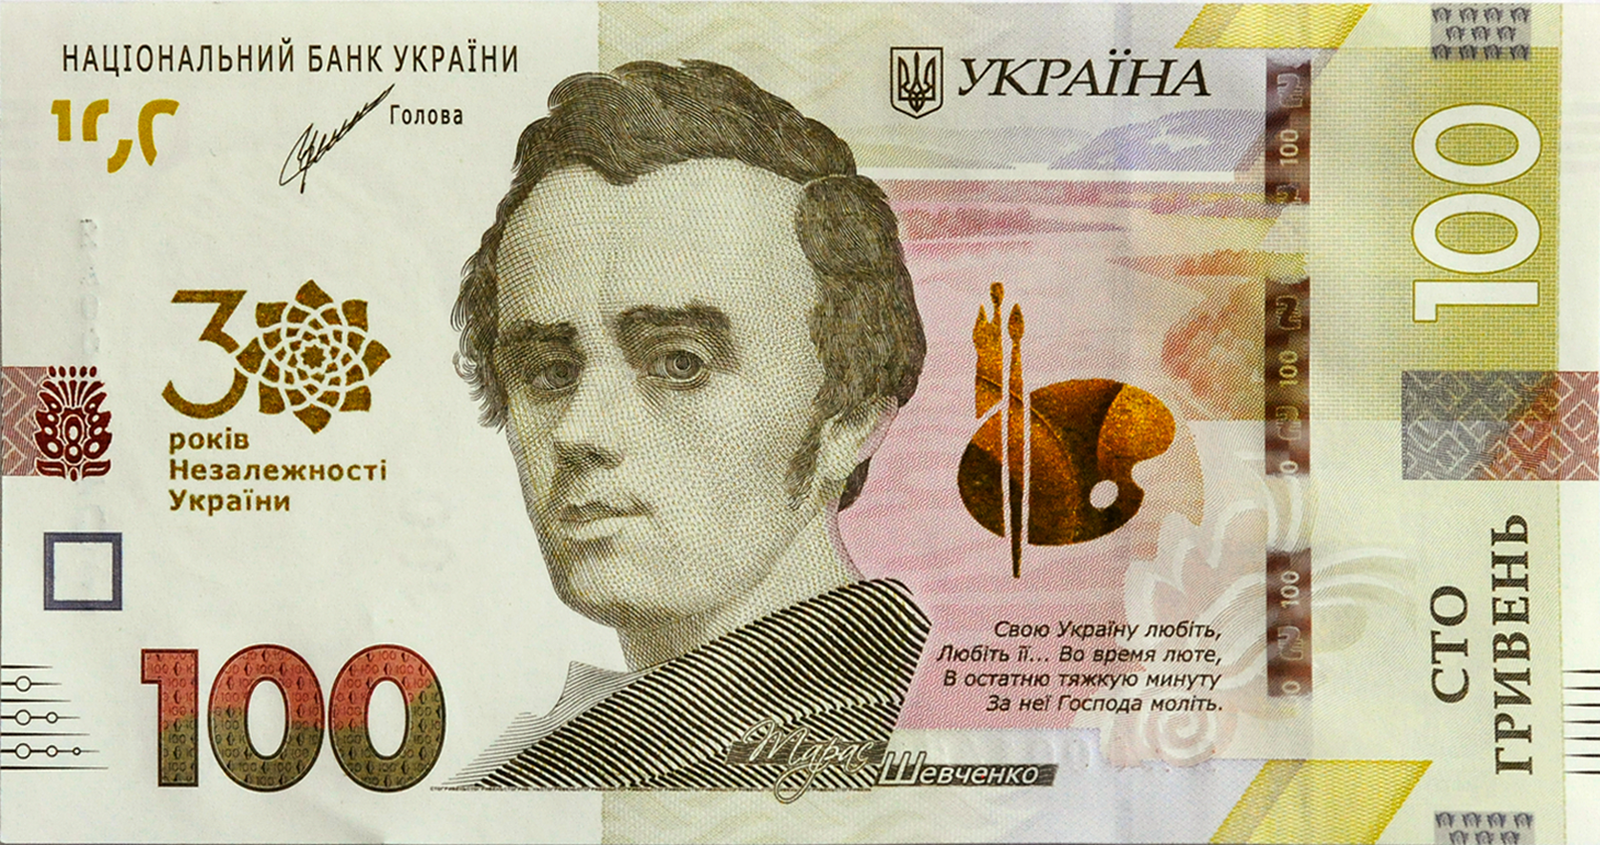 Сторона банкноты с портретом Шевченко